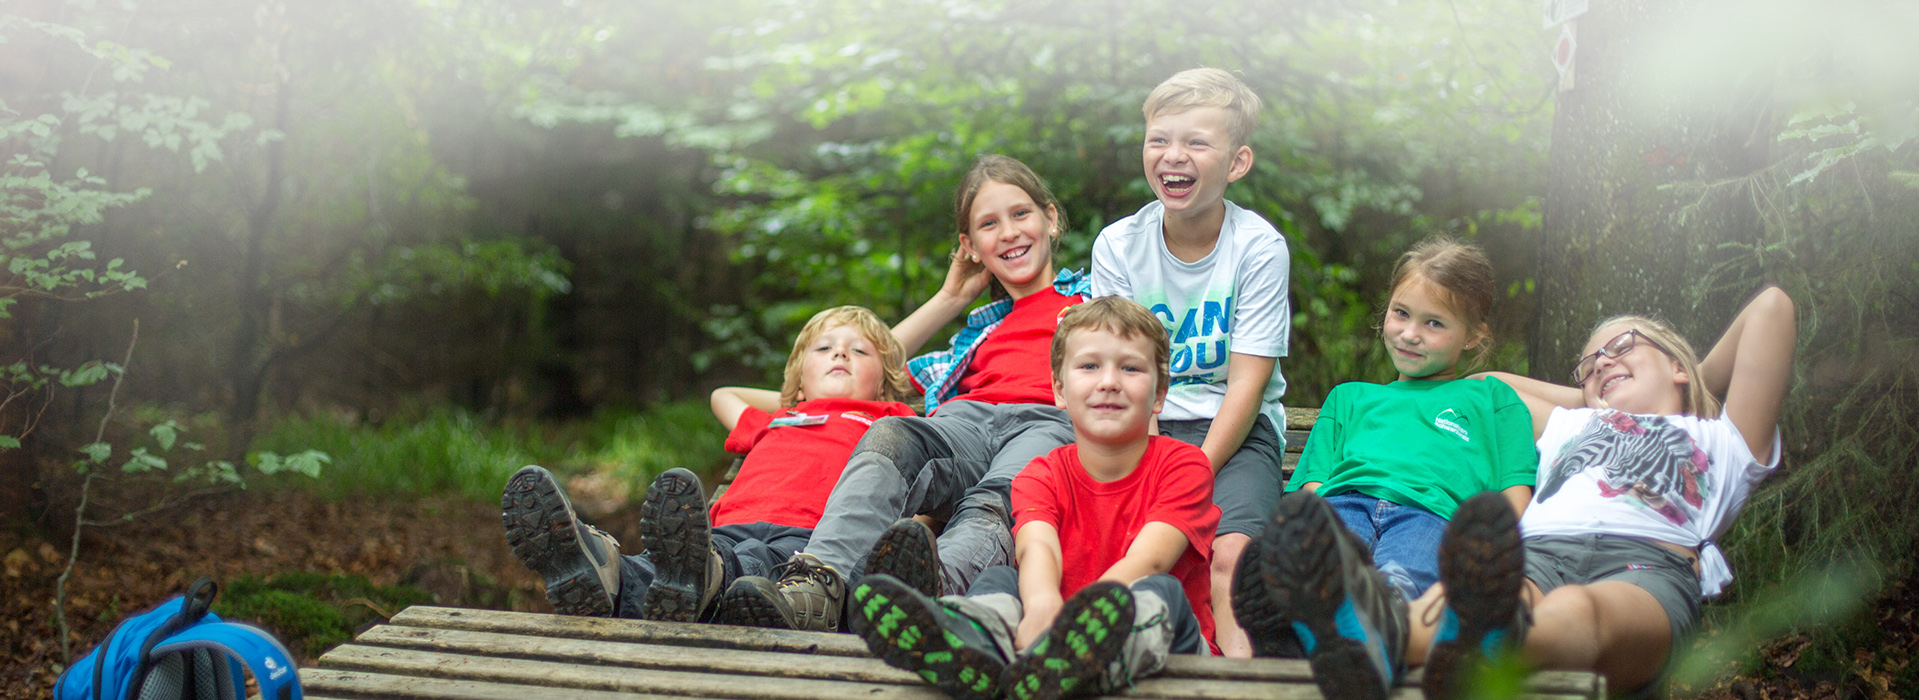 Eine Kindergruppe sitzt auf einer Holzliege und lacht in die Kamera.